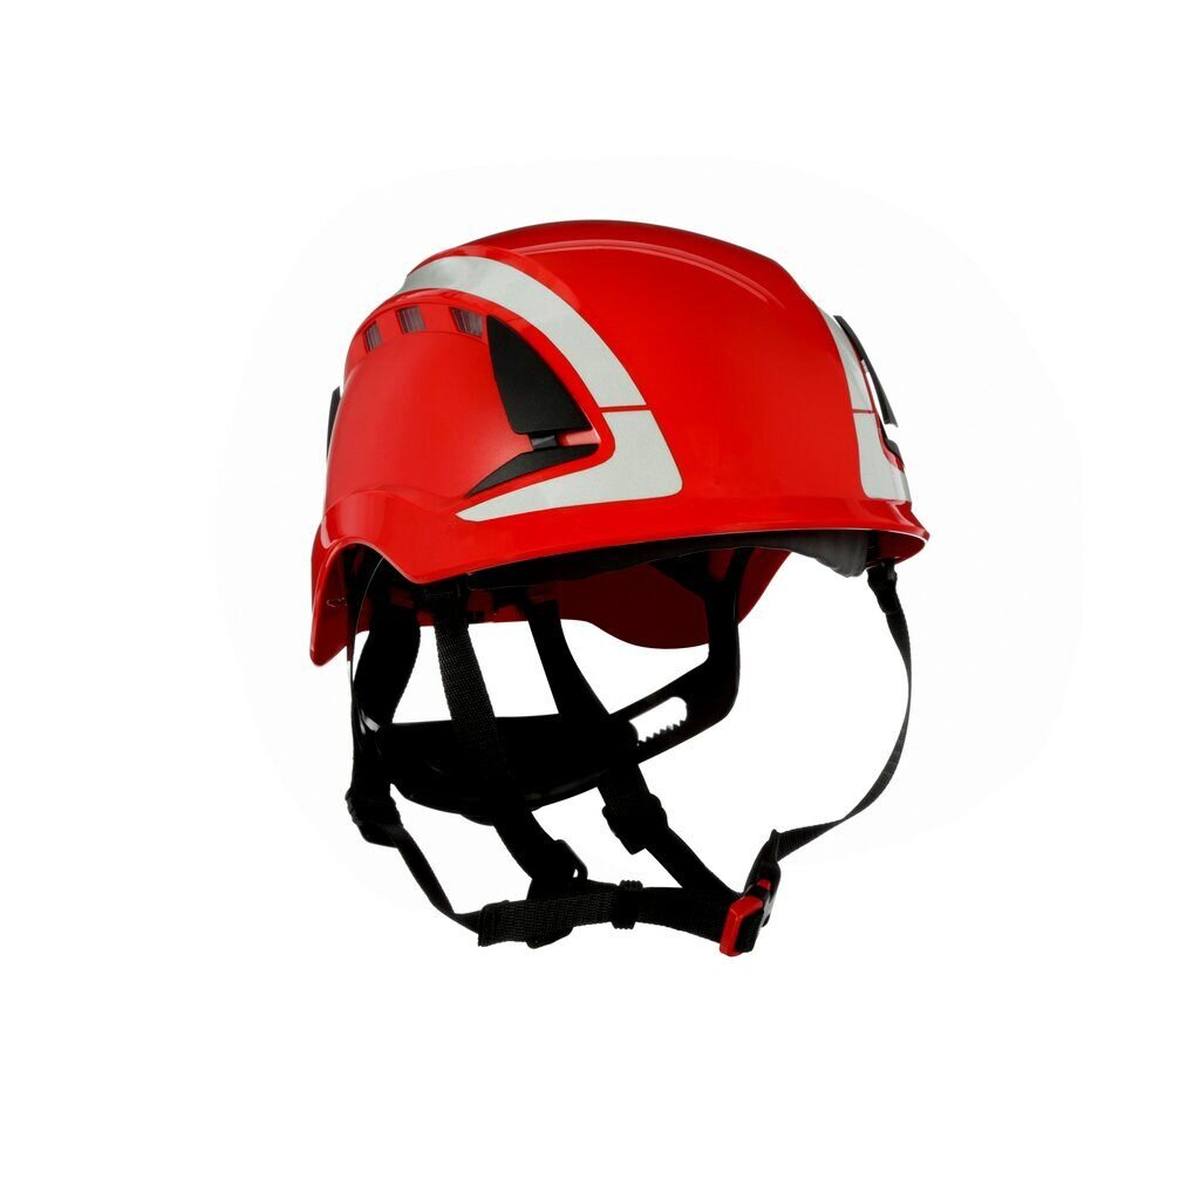 3M SecureFit safety helmet, X5005V-CE, red, ventilated, reflective, CE